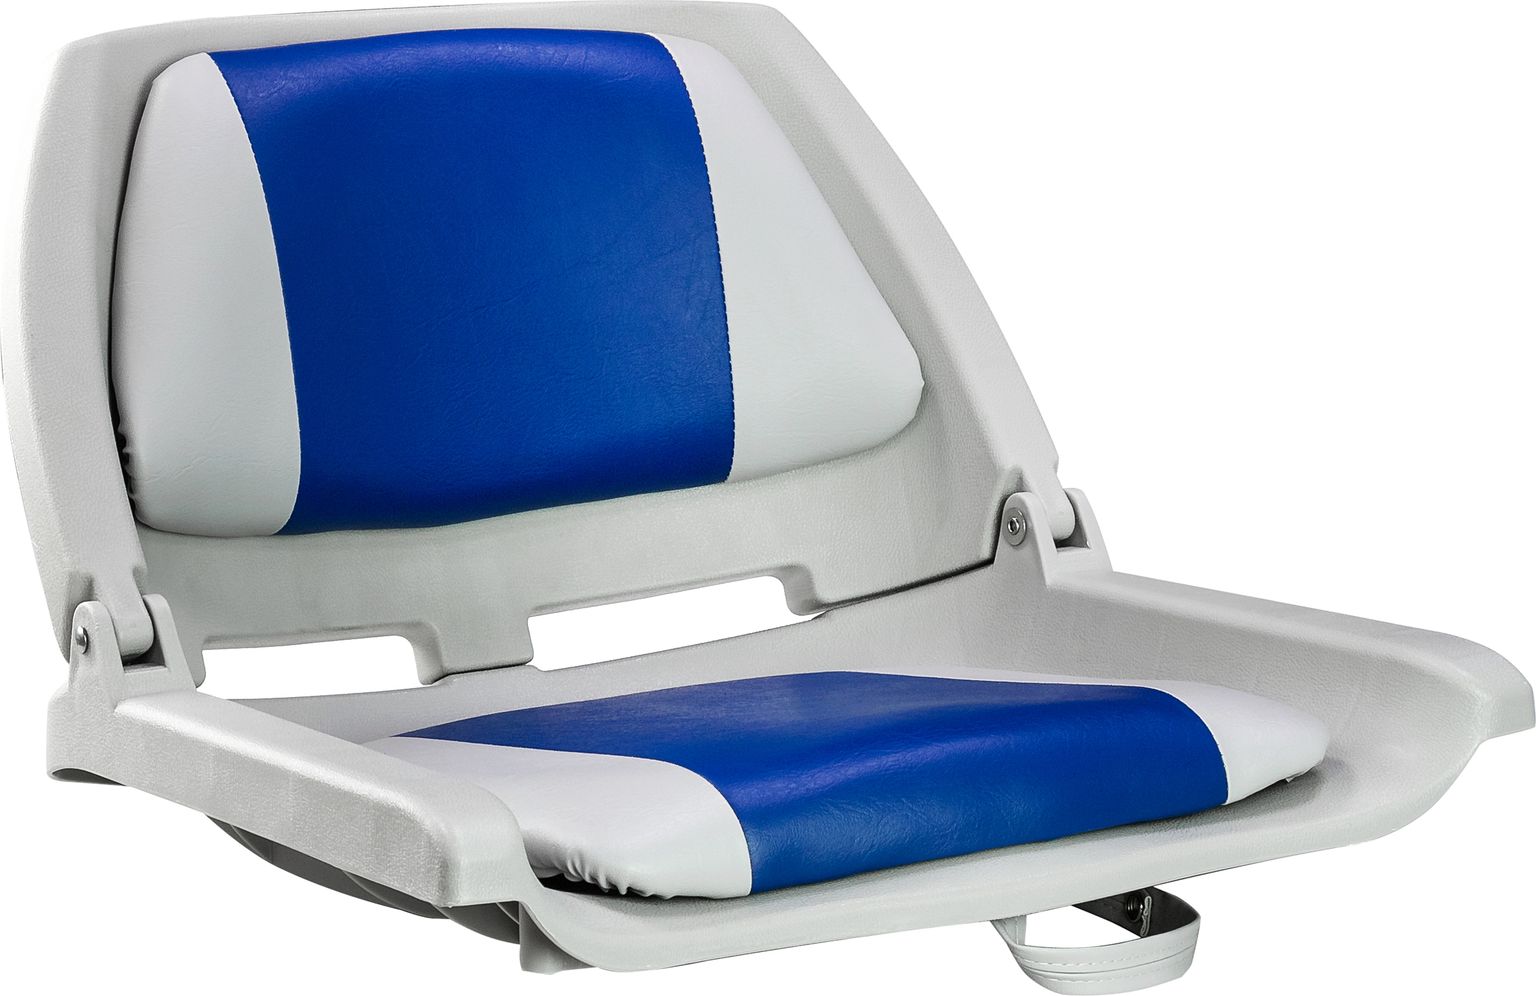 Кресло мягкое складное, обивка винил, цвет серый/синий, Marine Rocket 75109GB-MR кресло складное мягкое skipper серый темно серый 1061017